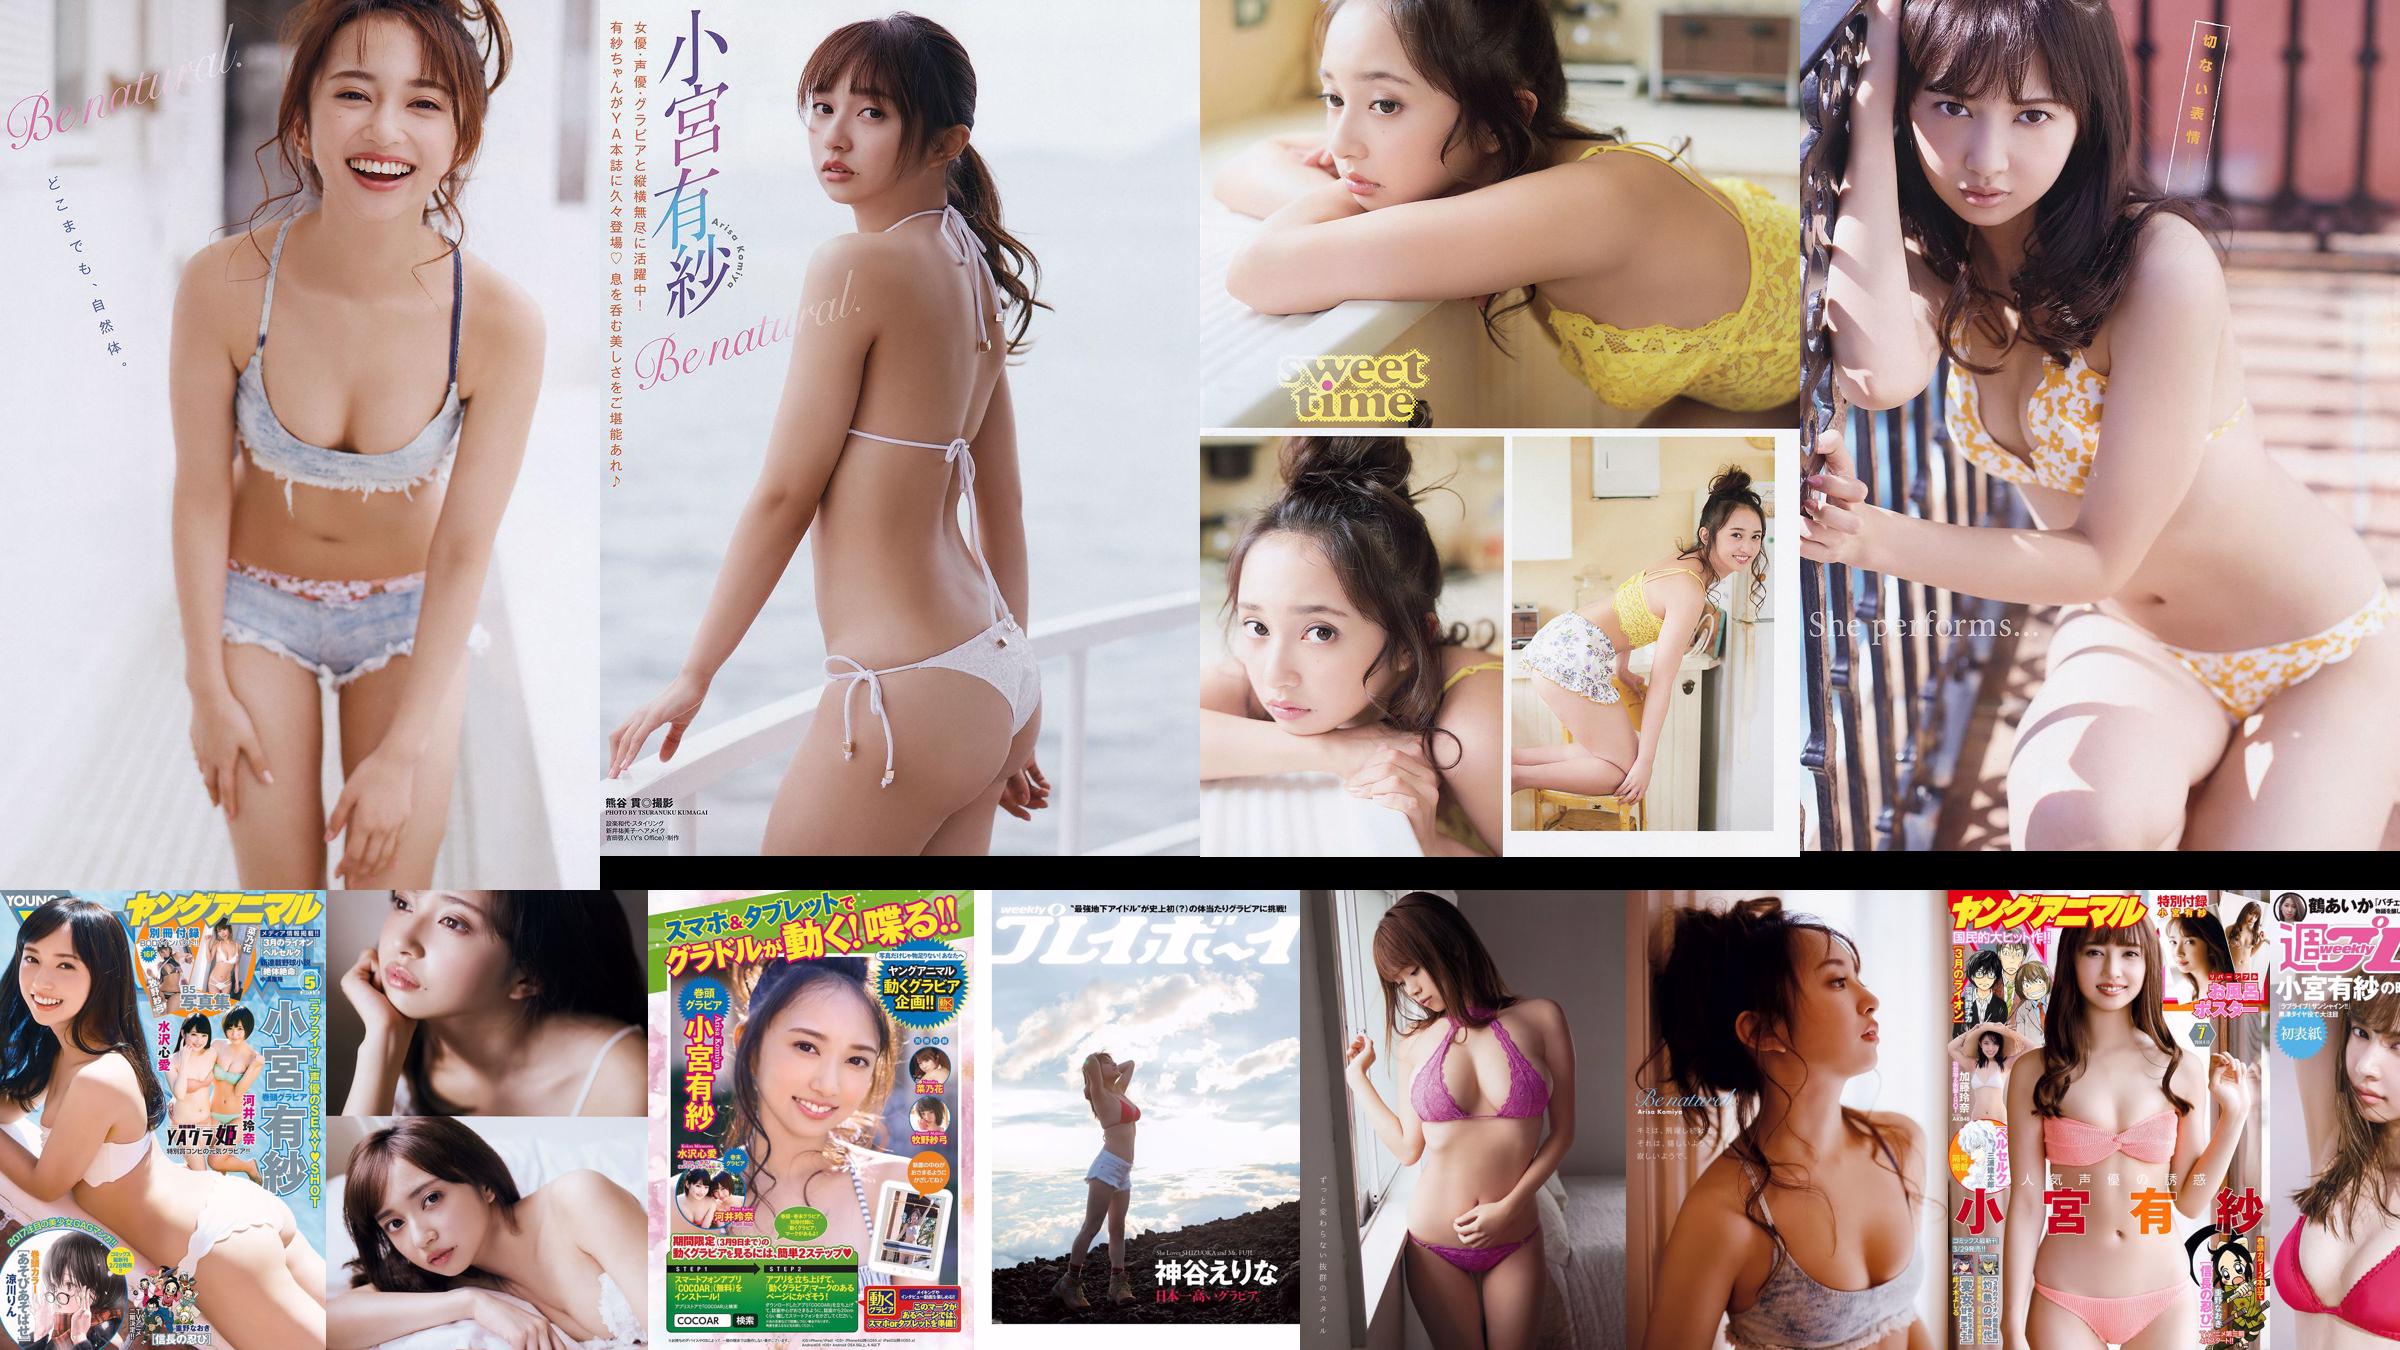 Arisa Komiya Rena Kato [Young Animal] 2018 No.07 Photo Magazine No.a8db05 Pagina 1